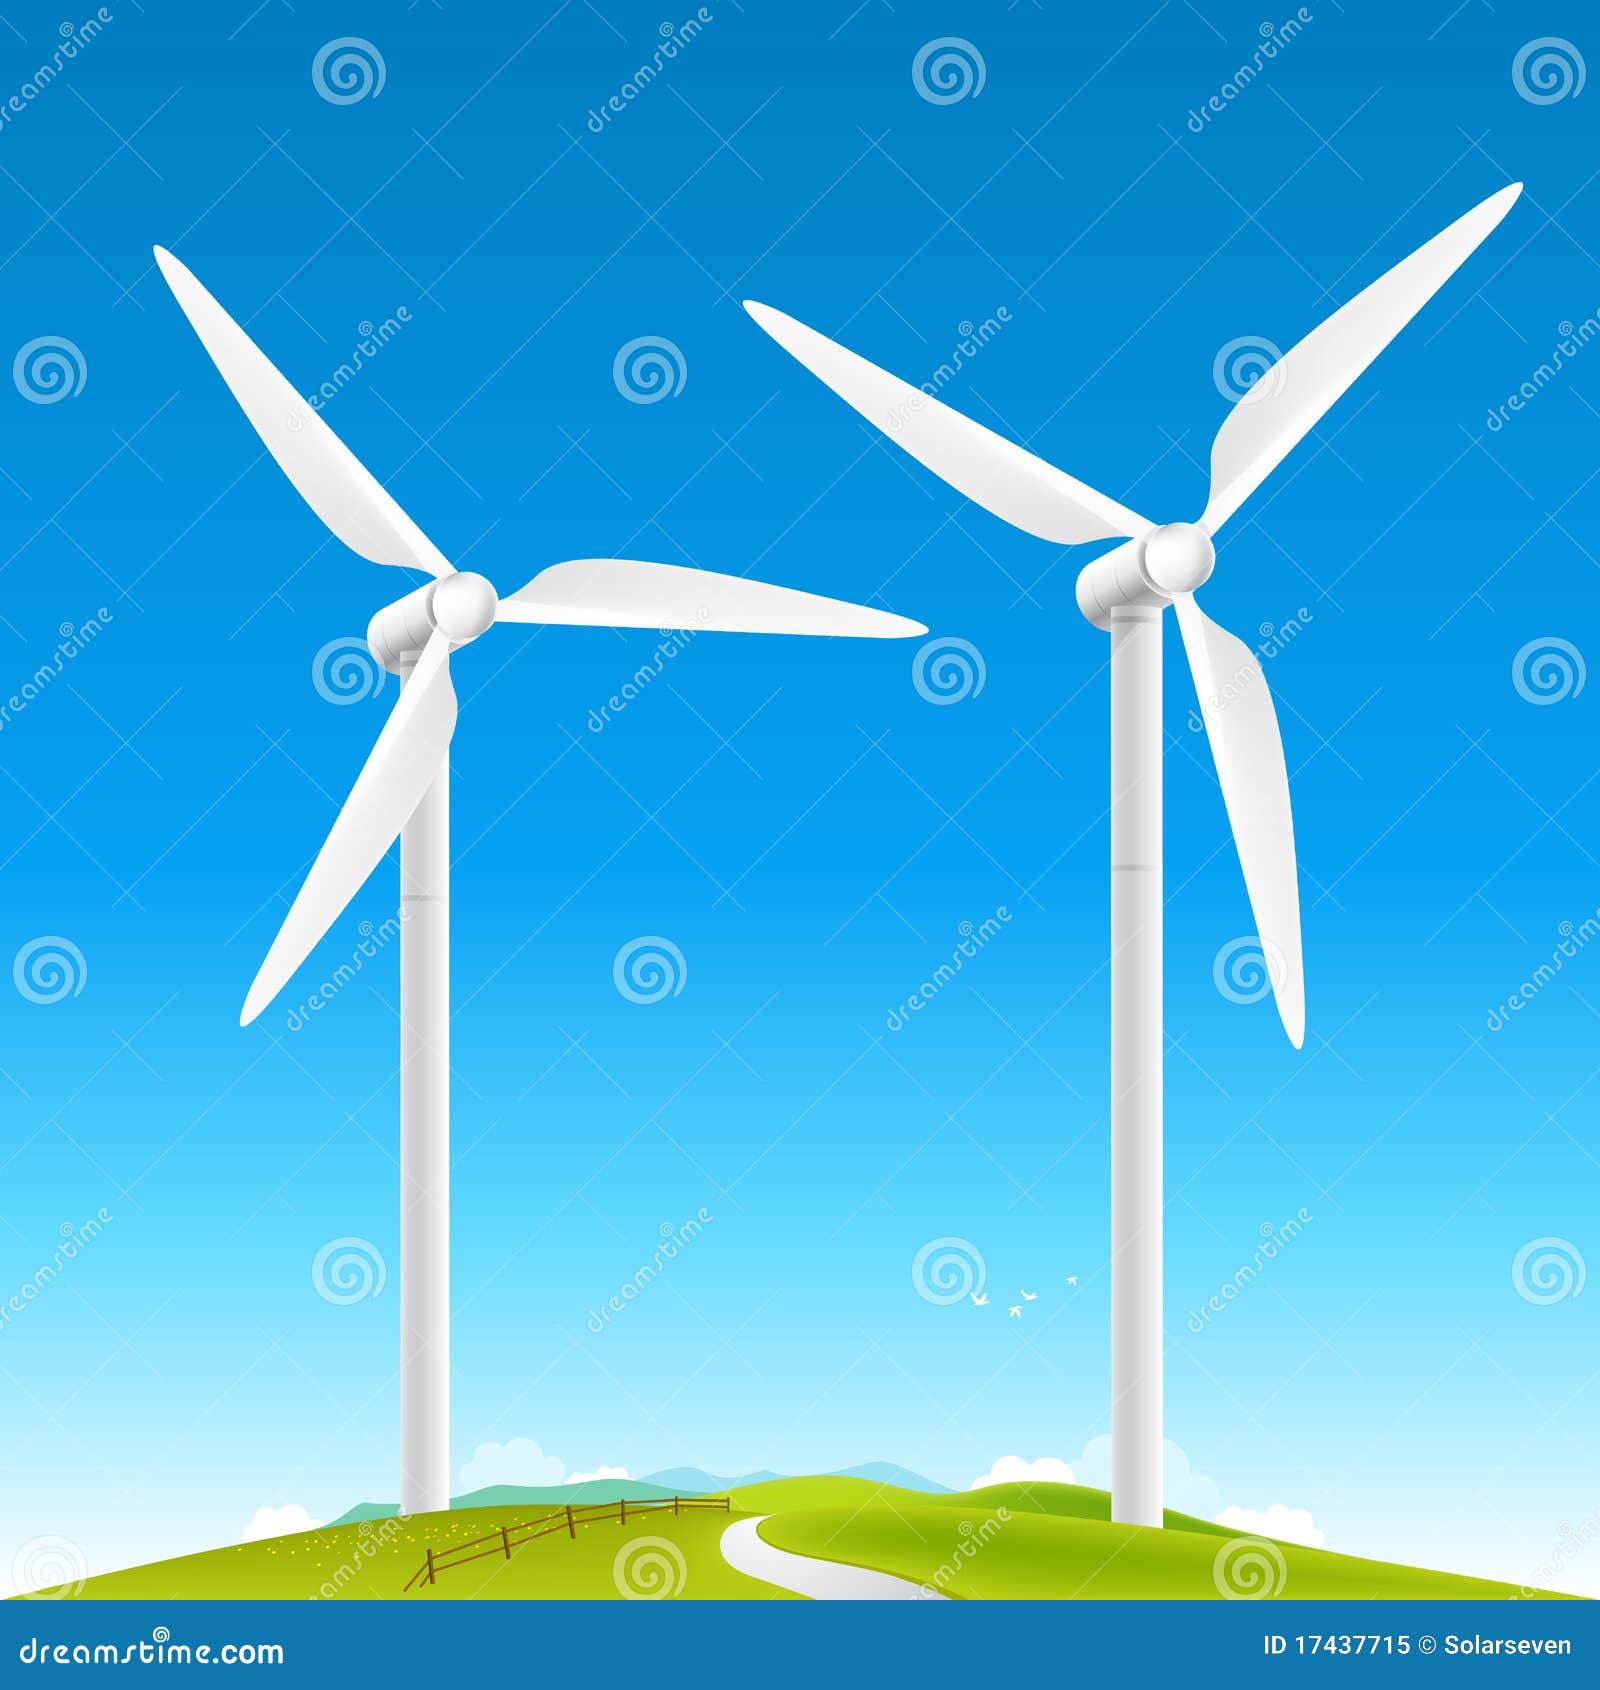 8 ideas de Molinos de viento  molinos de viento, viento dibujo, viento